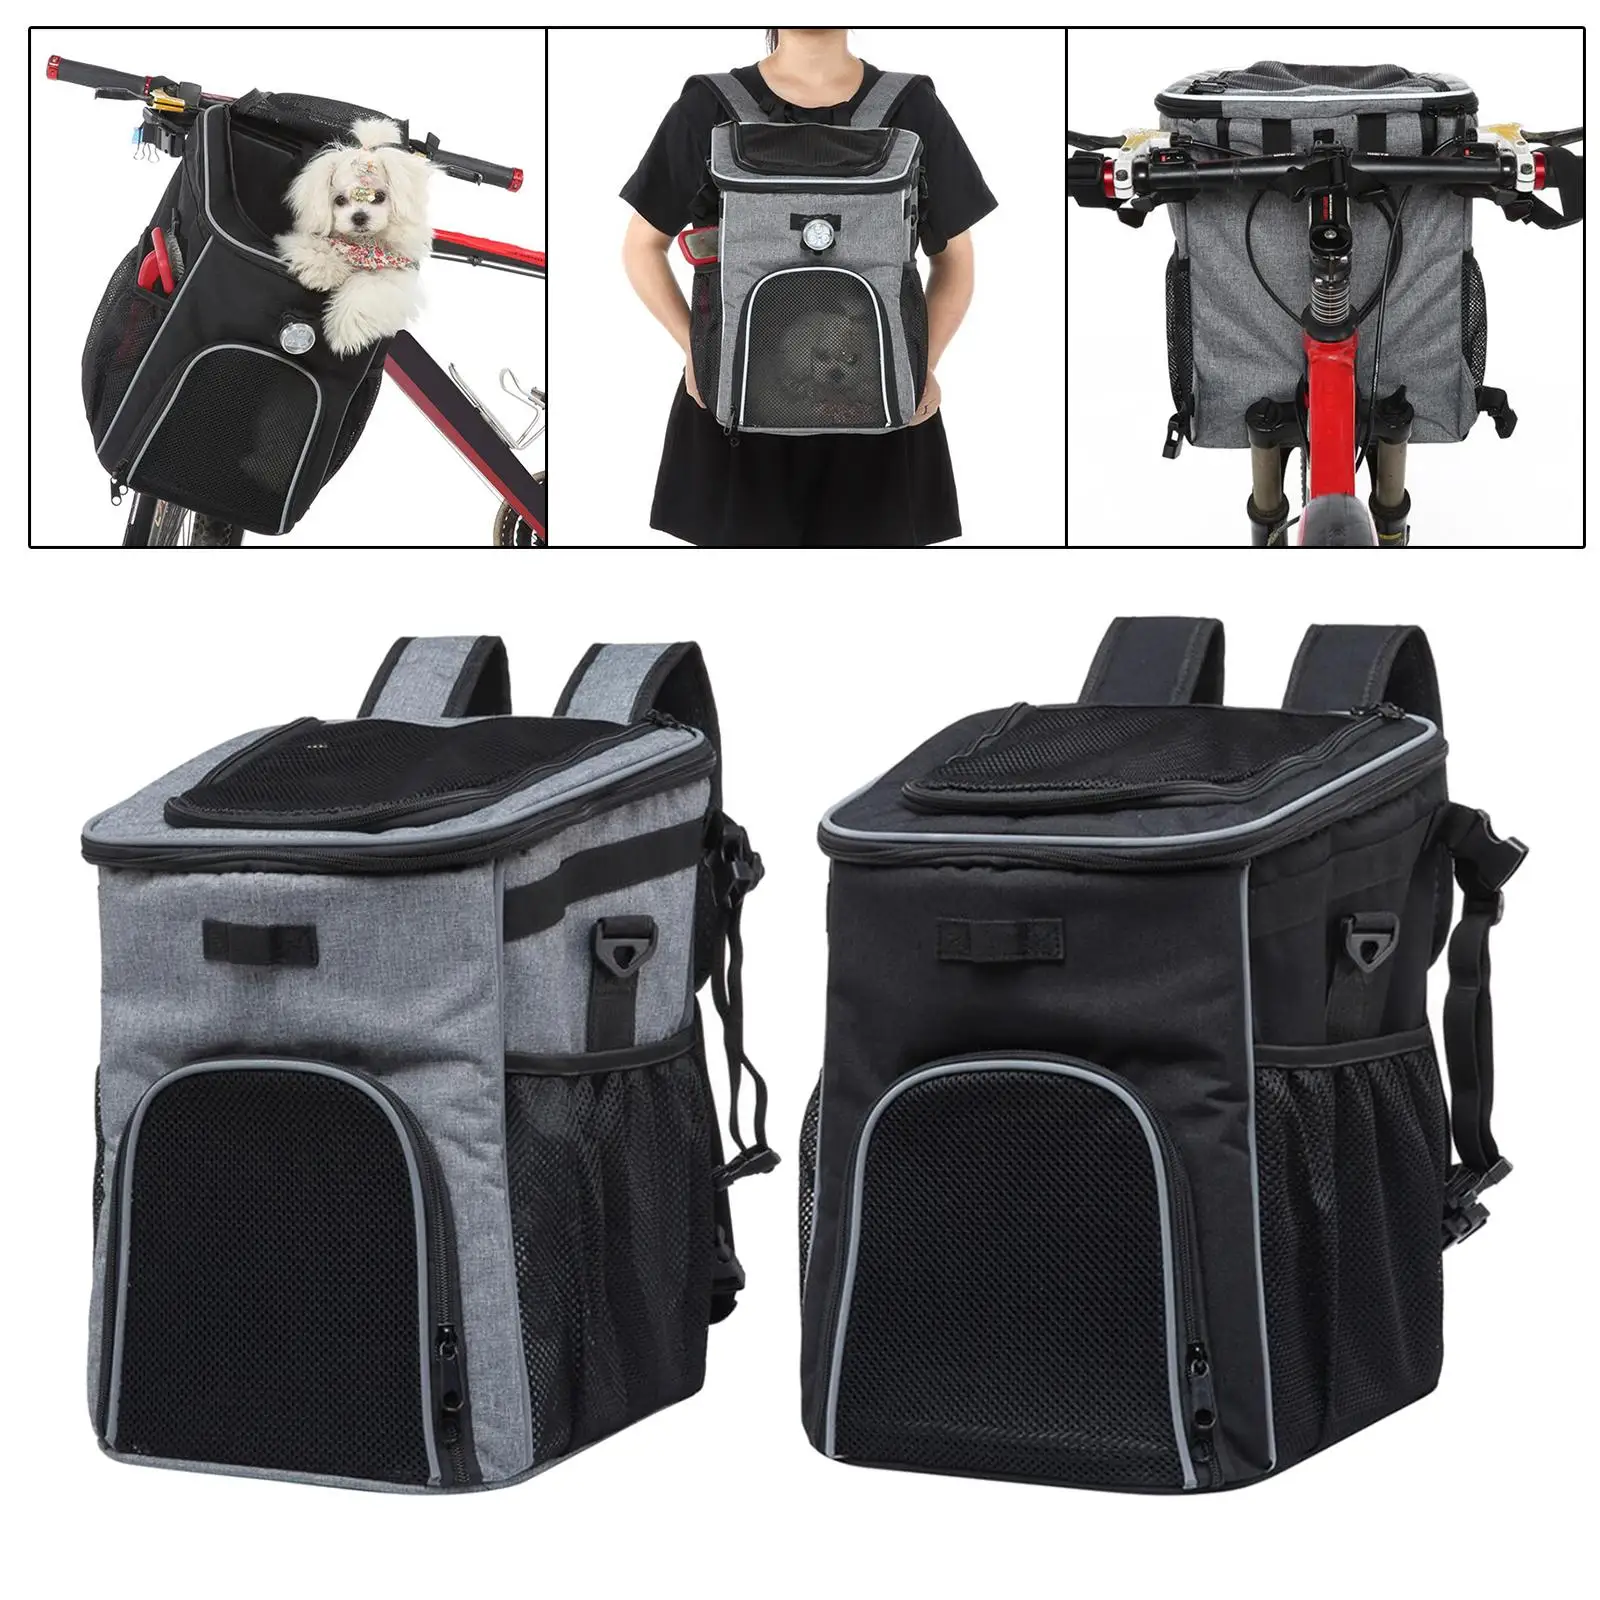 Dog Bike Basket Bag Breathable Dog Backpack Carrier Removable Lightweight Knapsack Pet Travel Bag for Bike Riding Walking